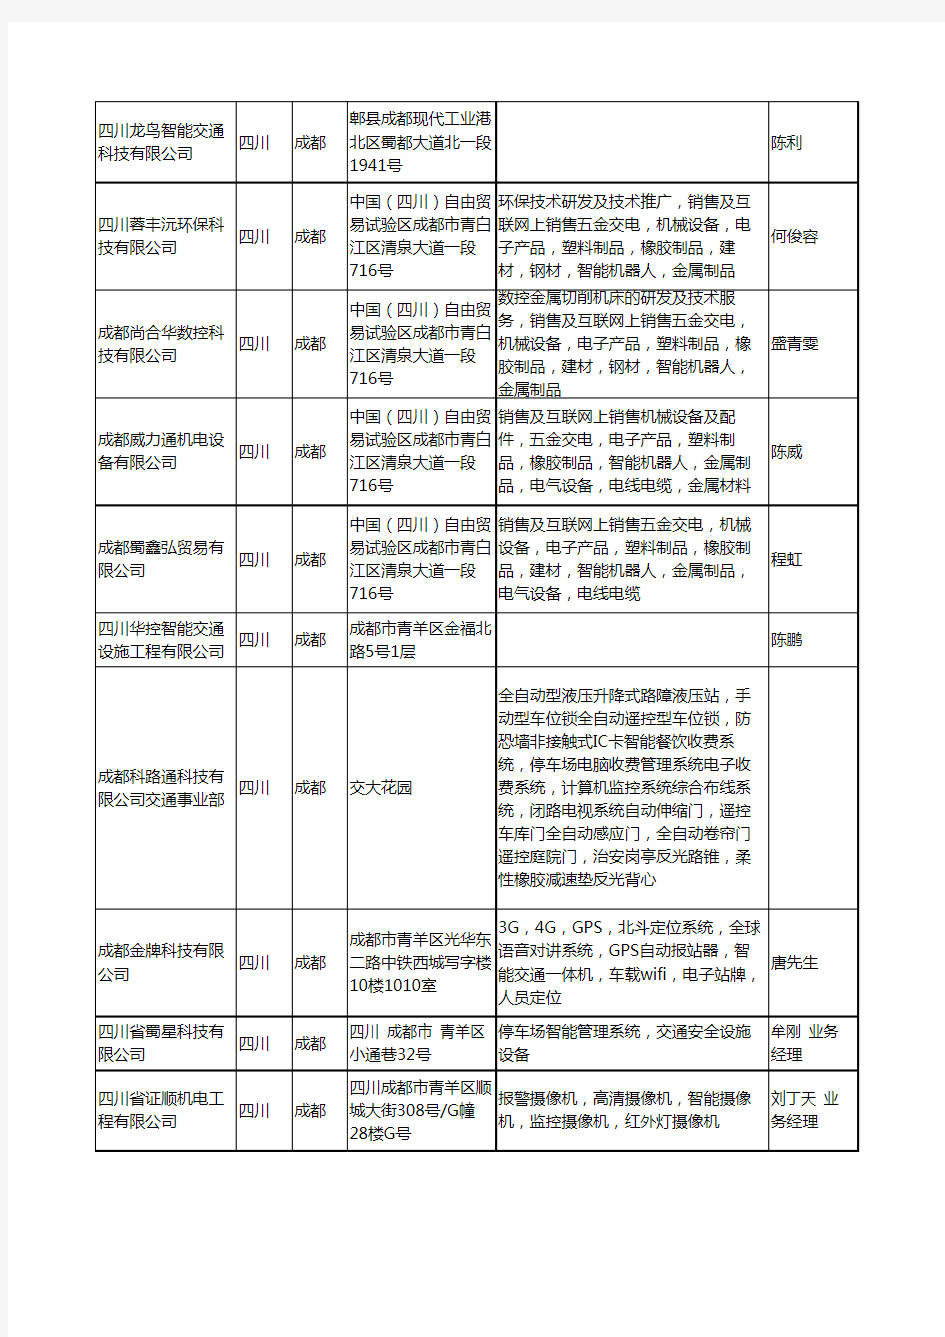 2020新版四川省智能交通工商企业公司名录名单黄页大全58家